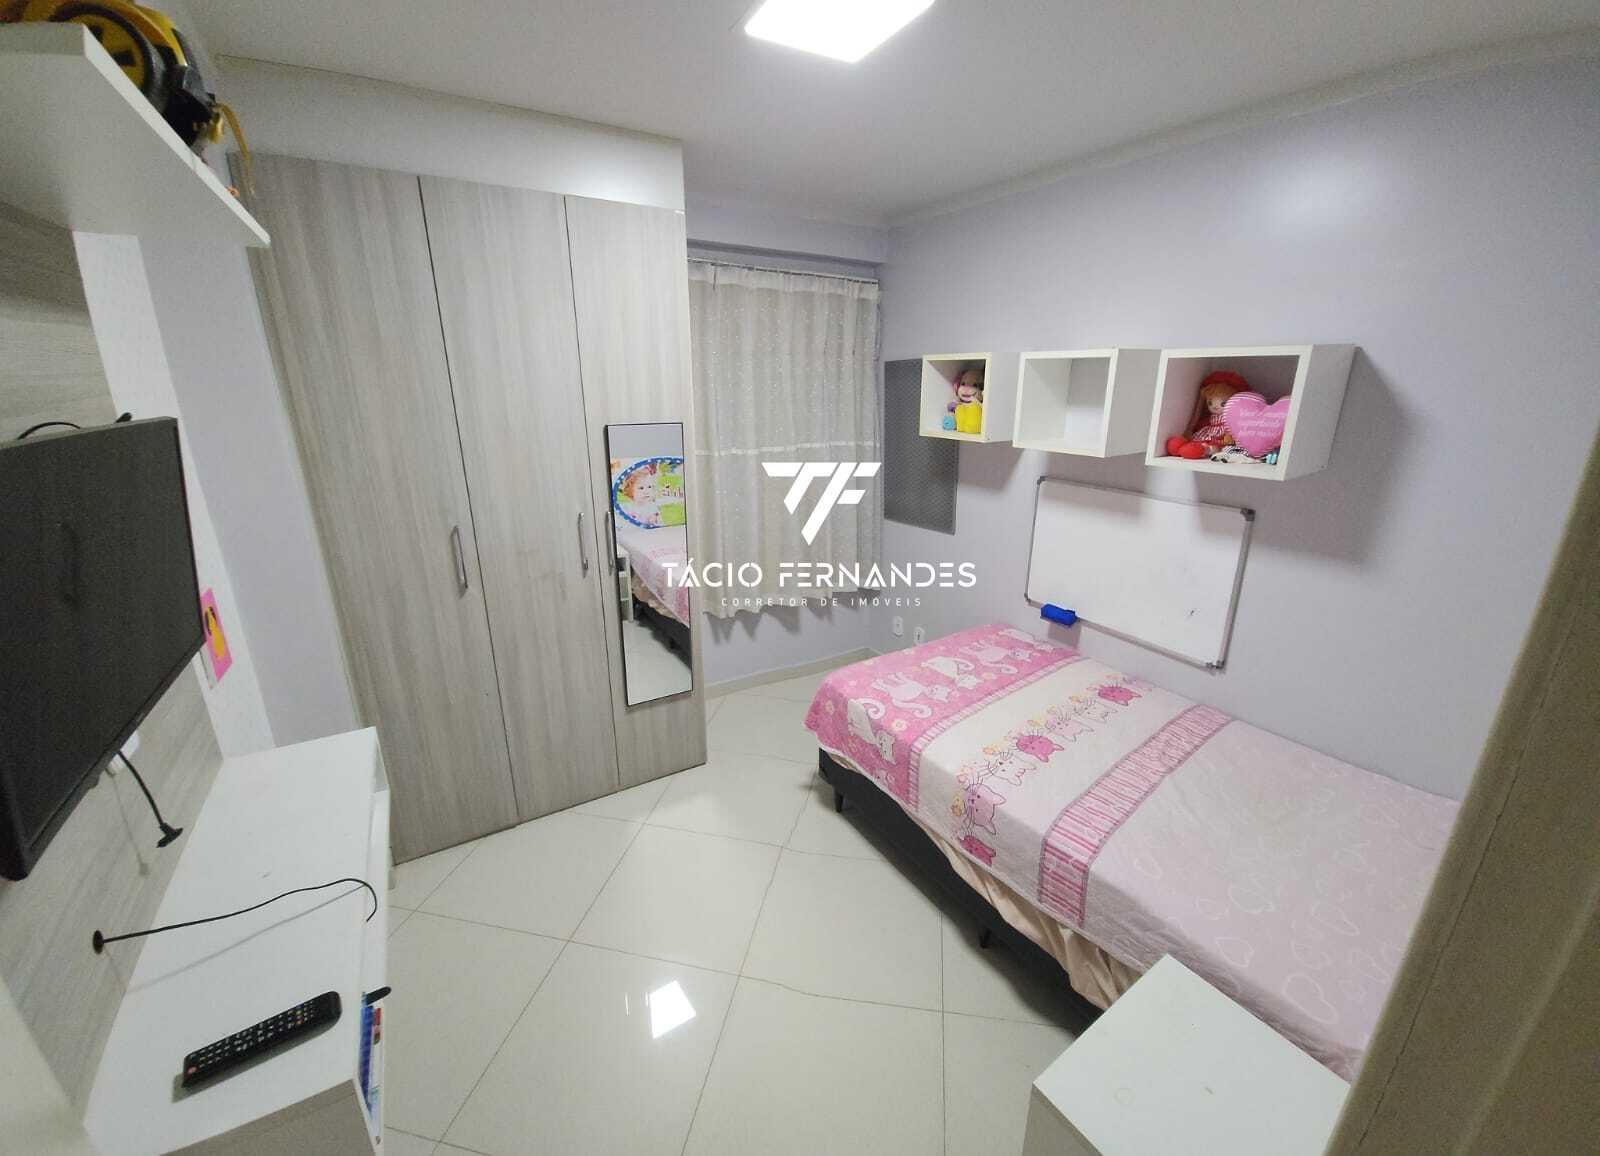 Apartamento, 3 quartos, 78 m² - Foto 4